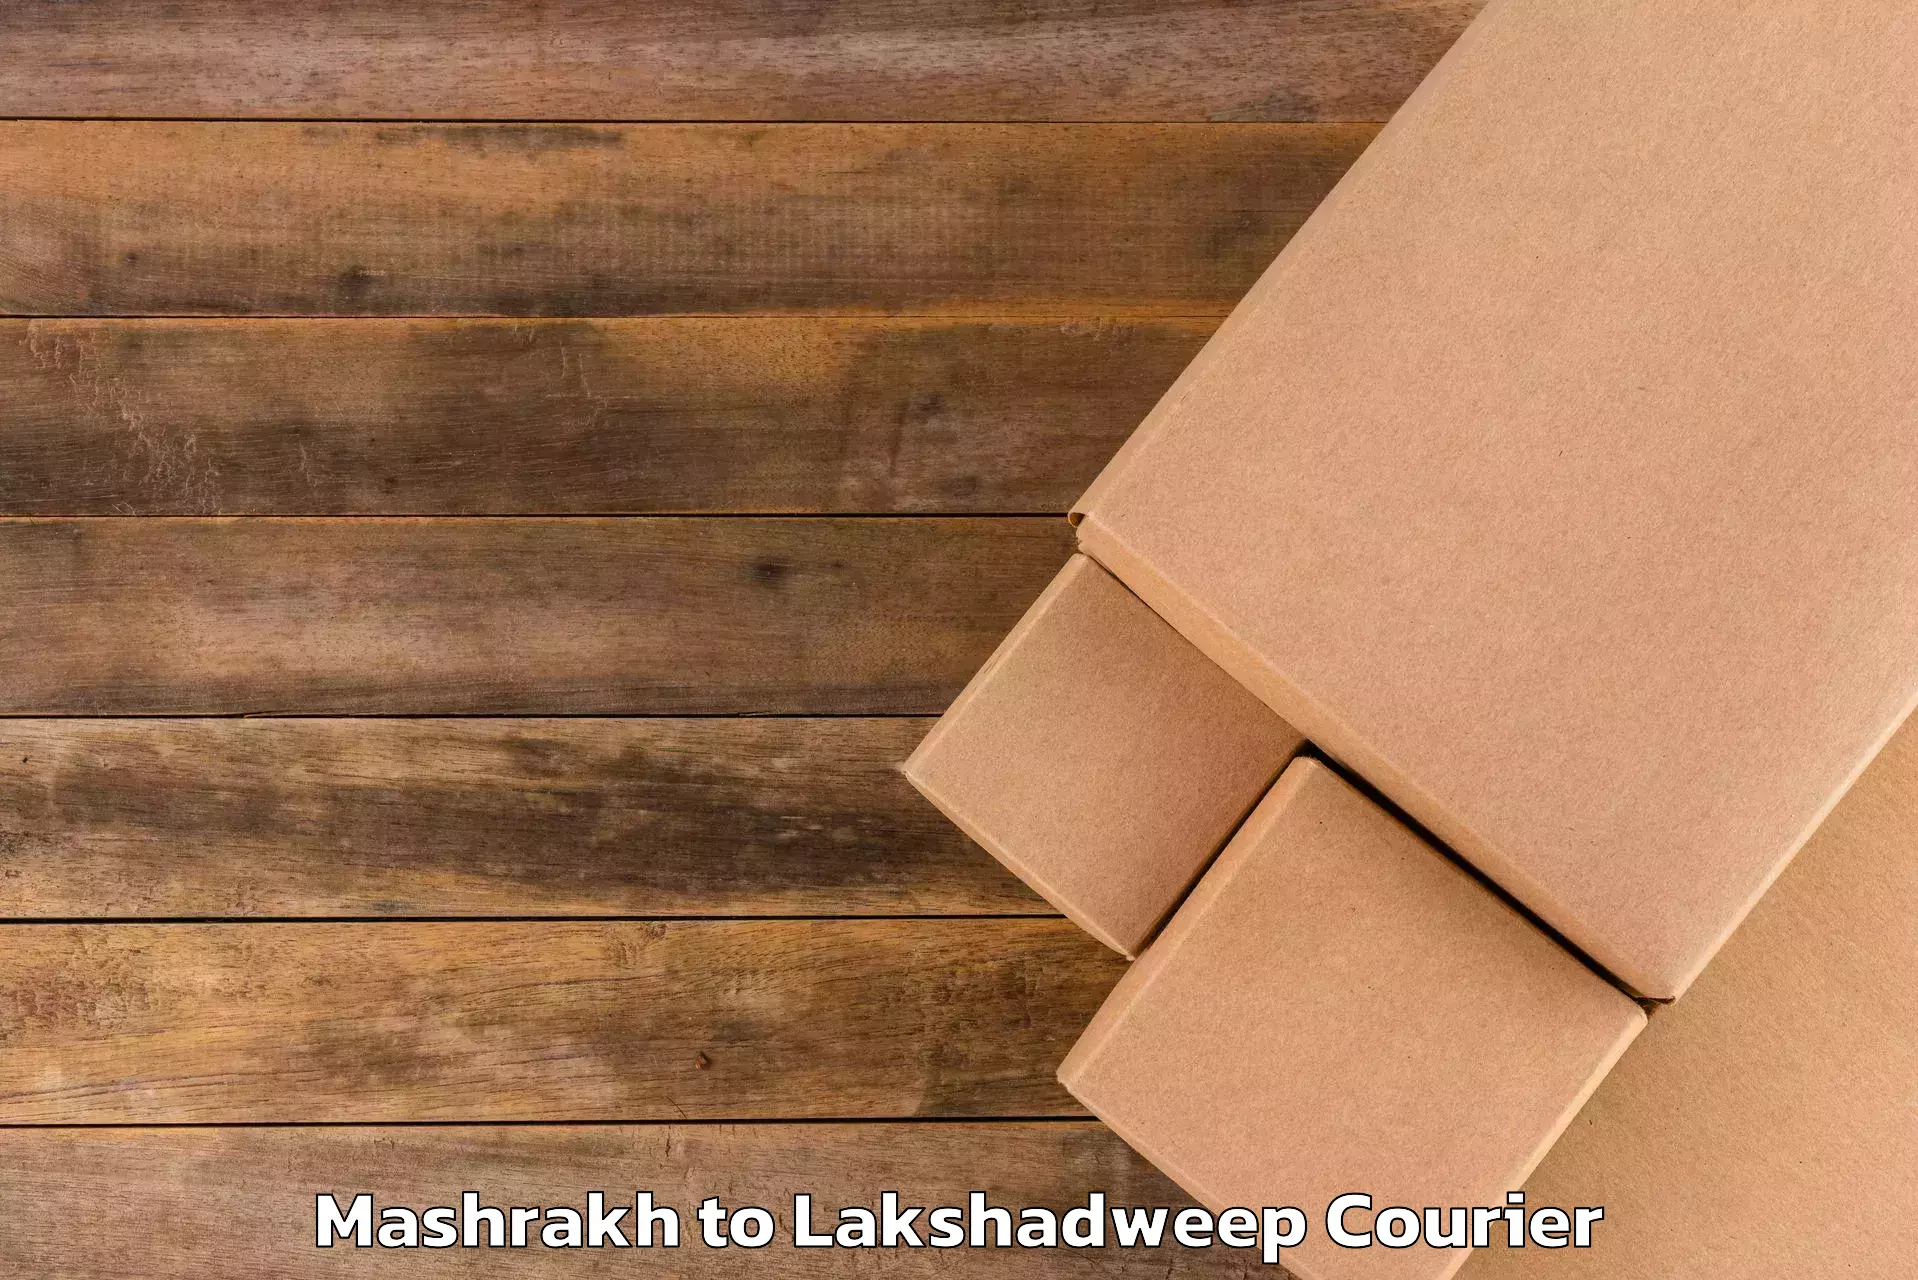 Reliable luggage courier Mashrakh to Lakshadweep